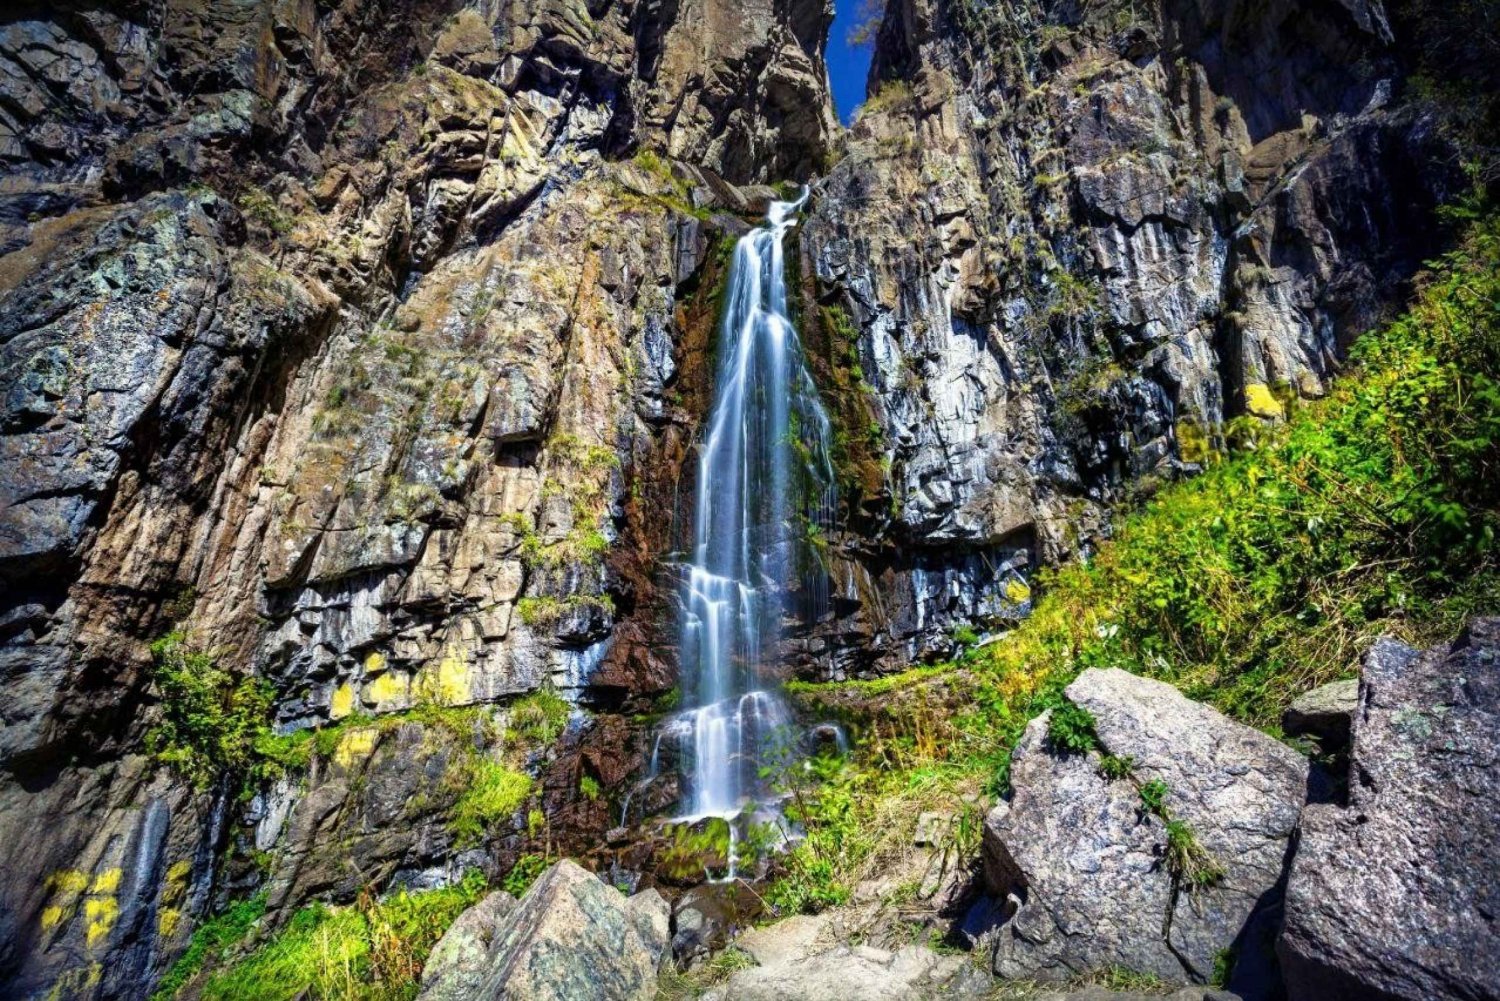 'Butakovka Waterfall' - a half day tour